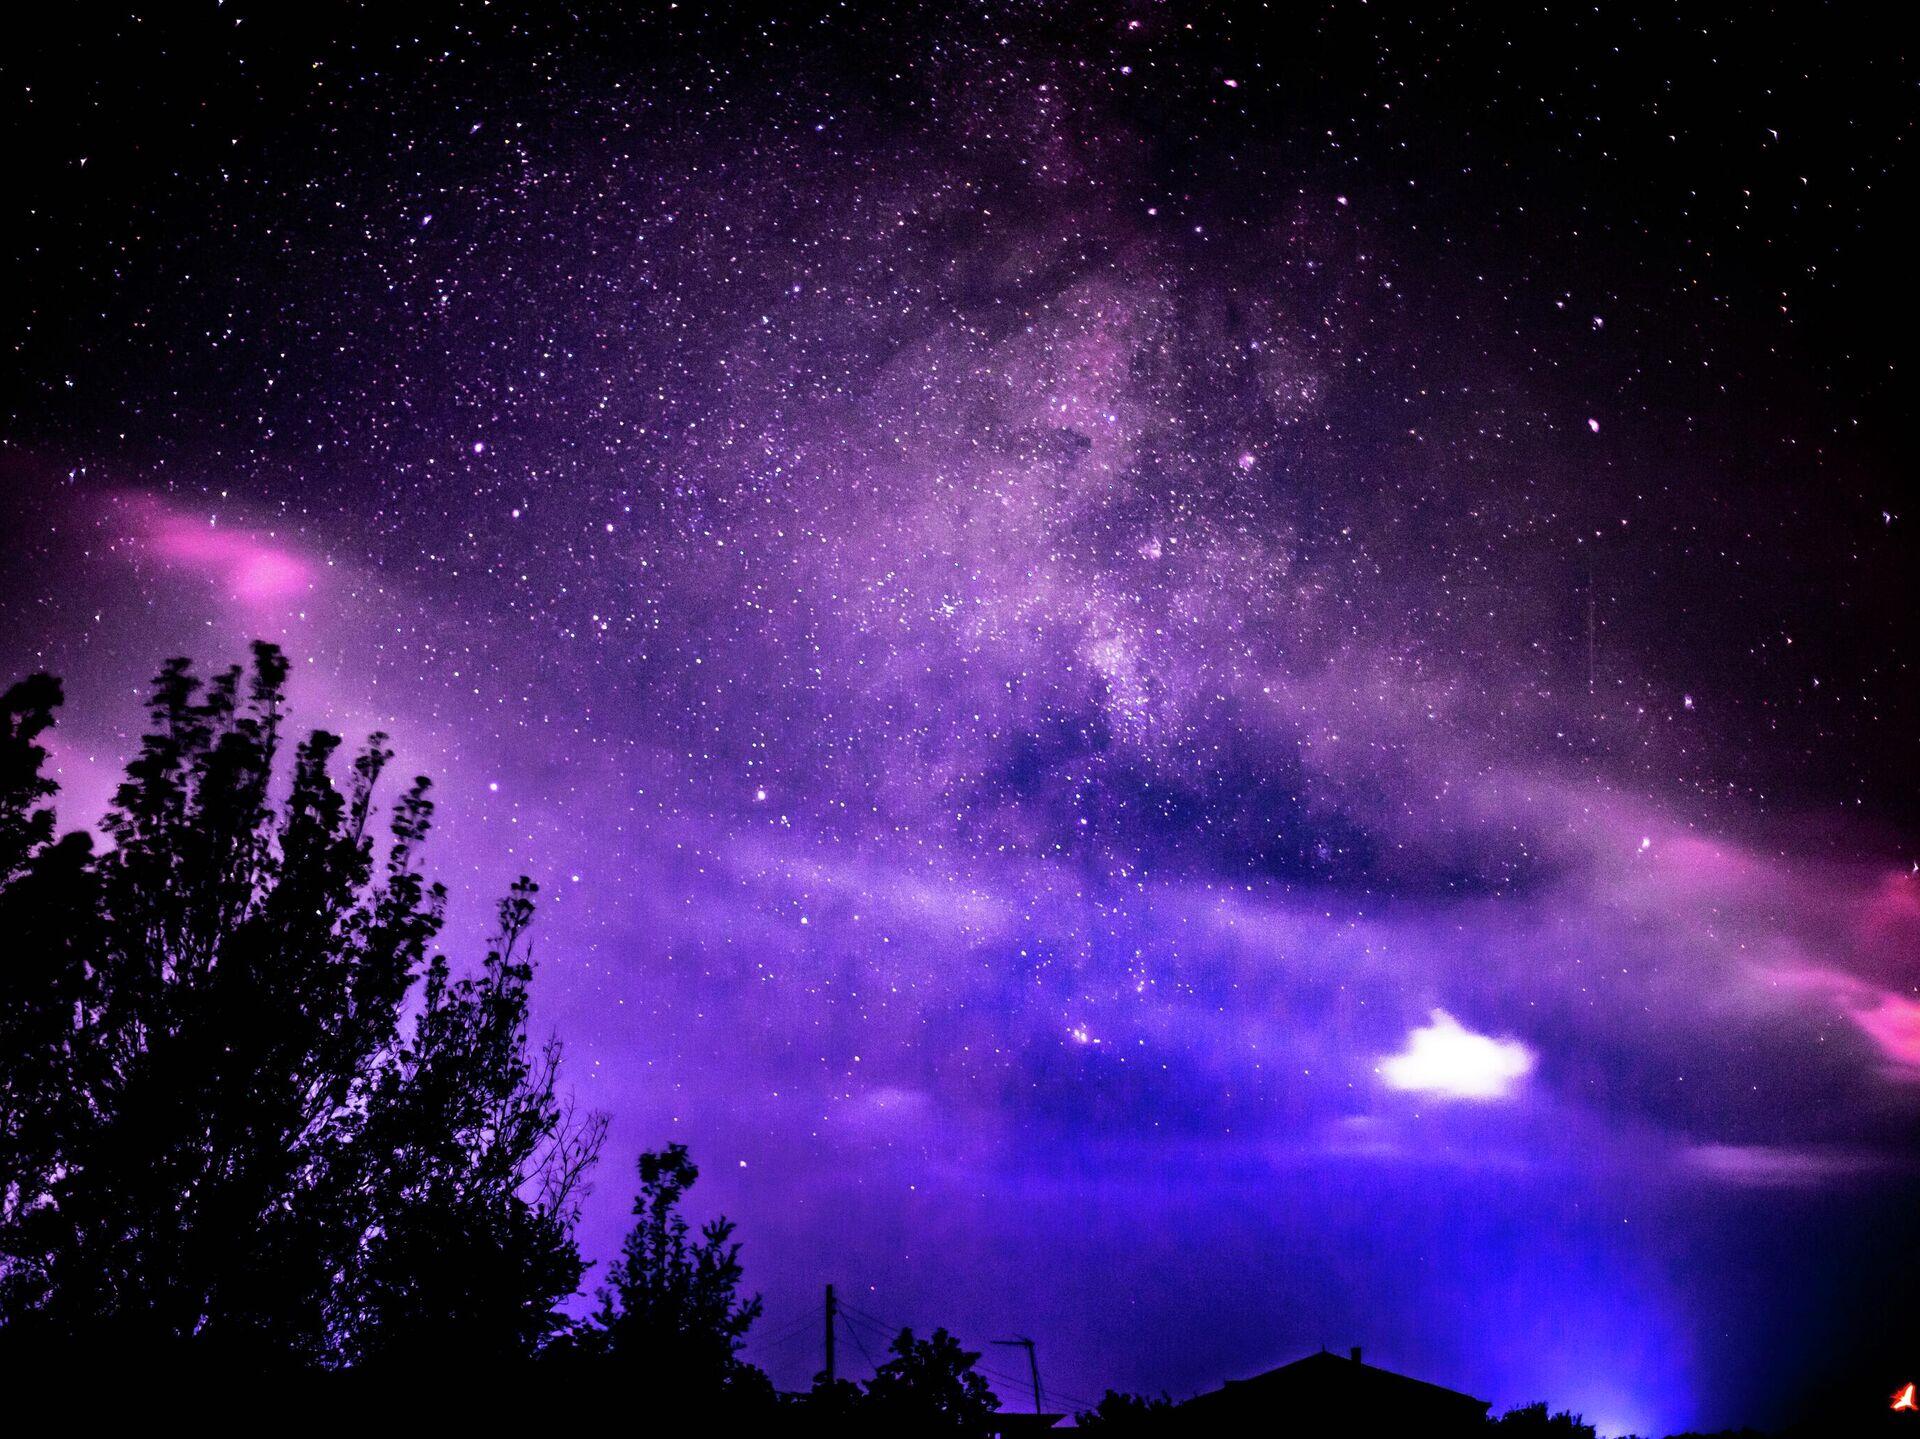 Картина Picsis Звездное небо, завораживающая ночь, 660x430x40 мм  6023-13140953 - выгодная цена, отзывы, характеристики, фото - купить в  Москве и РФ